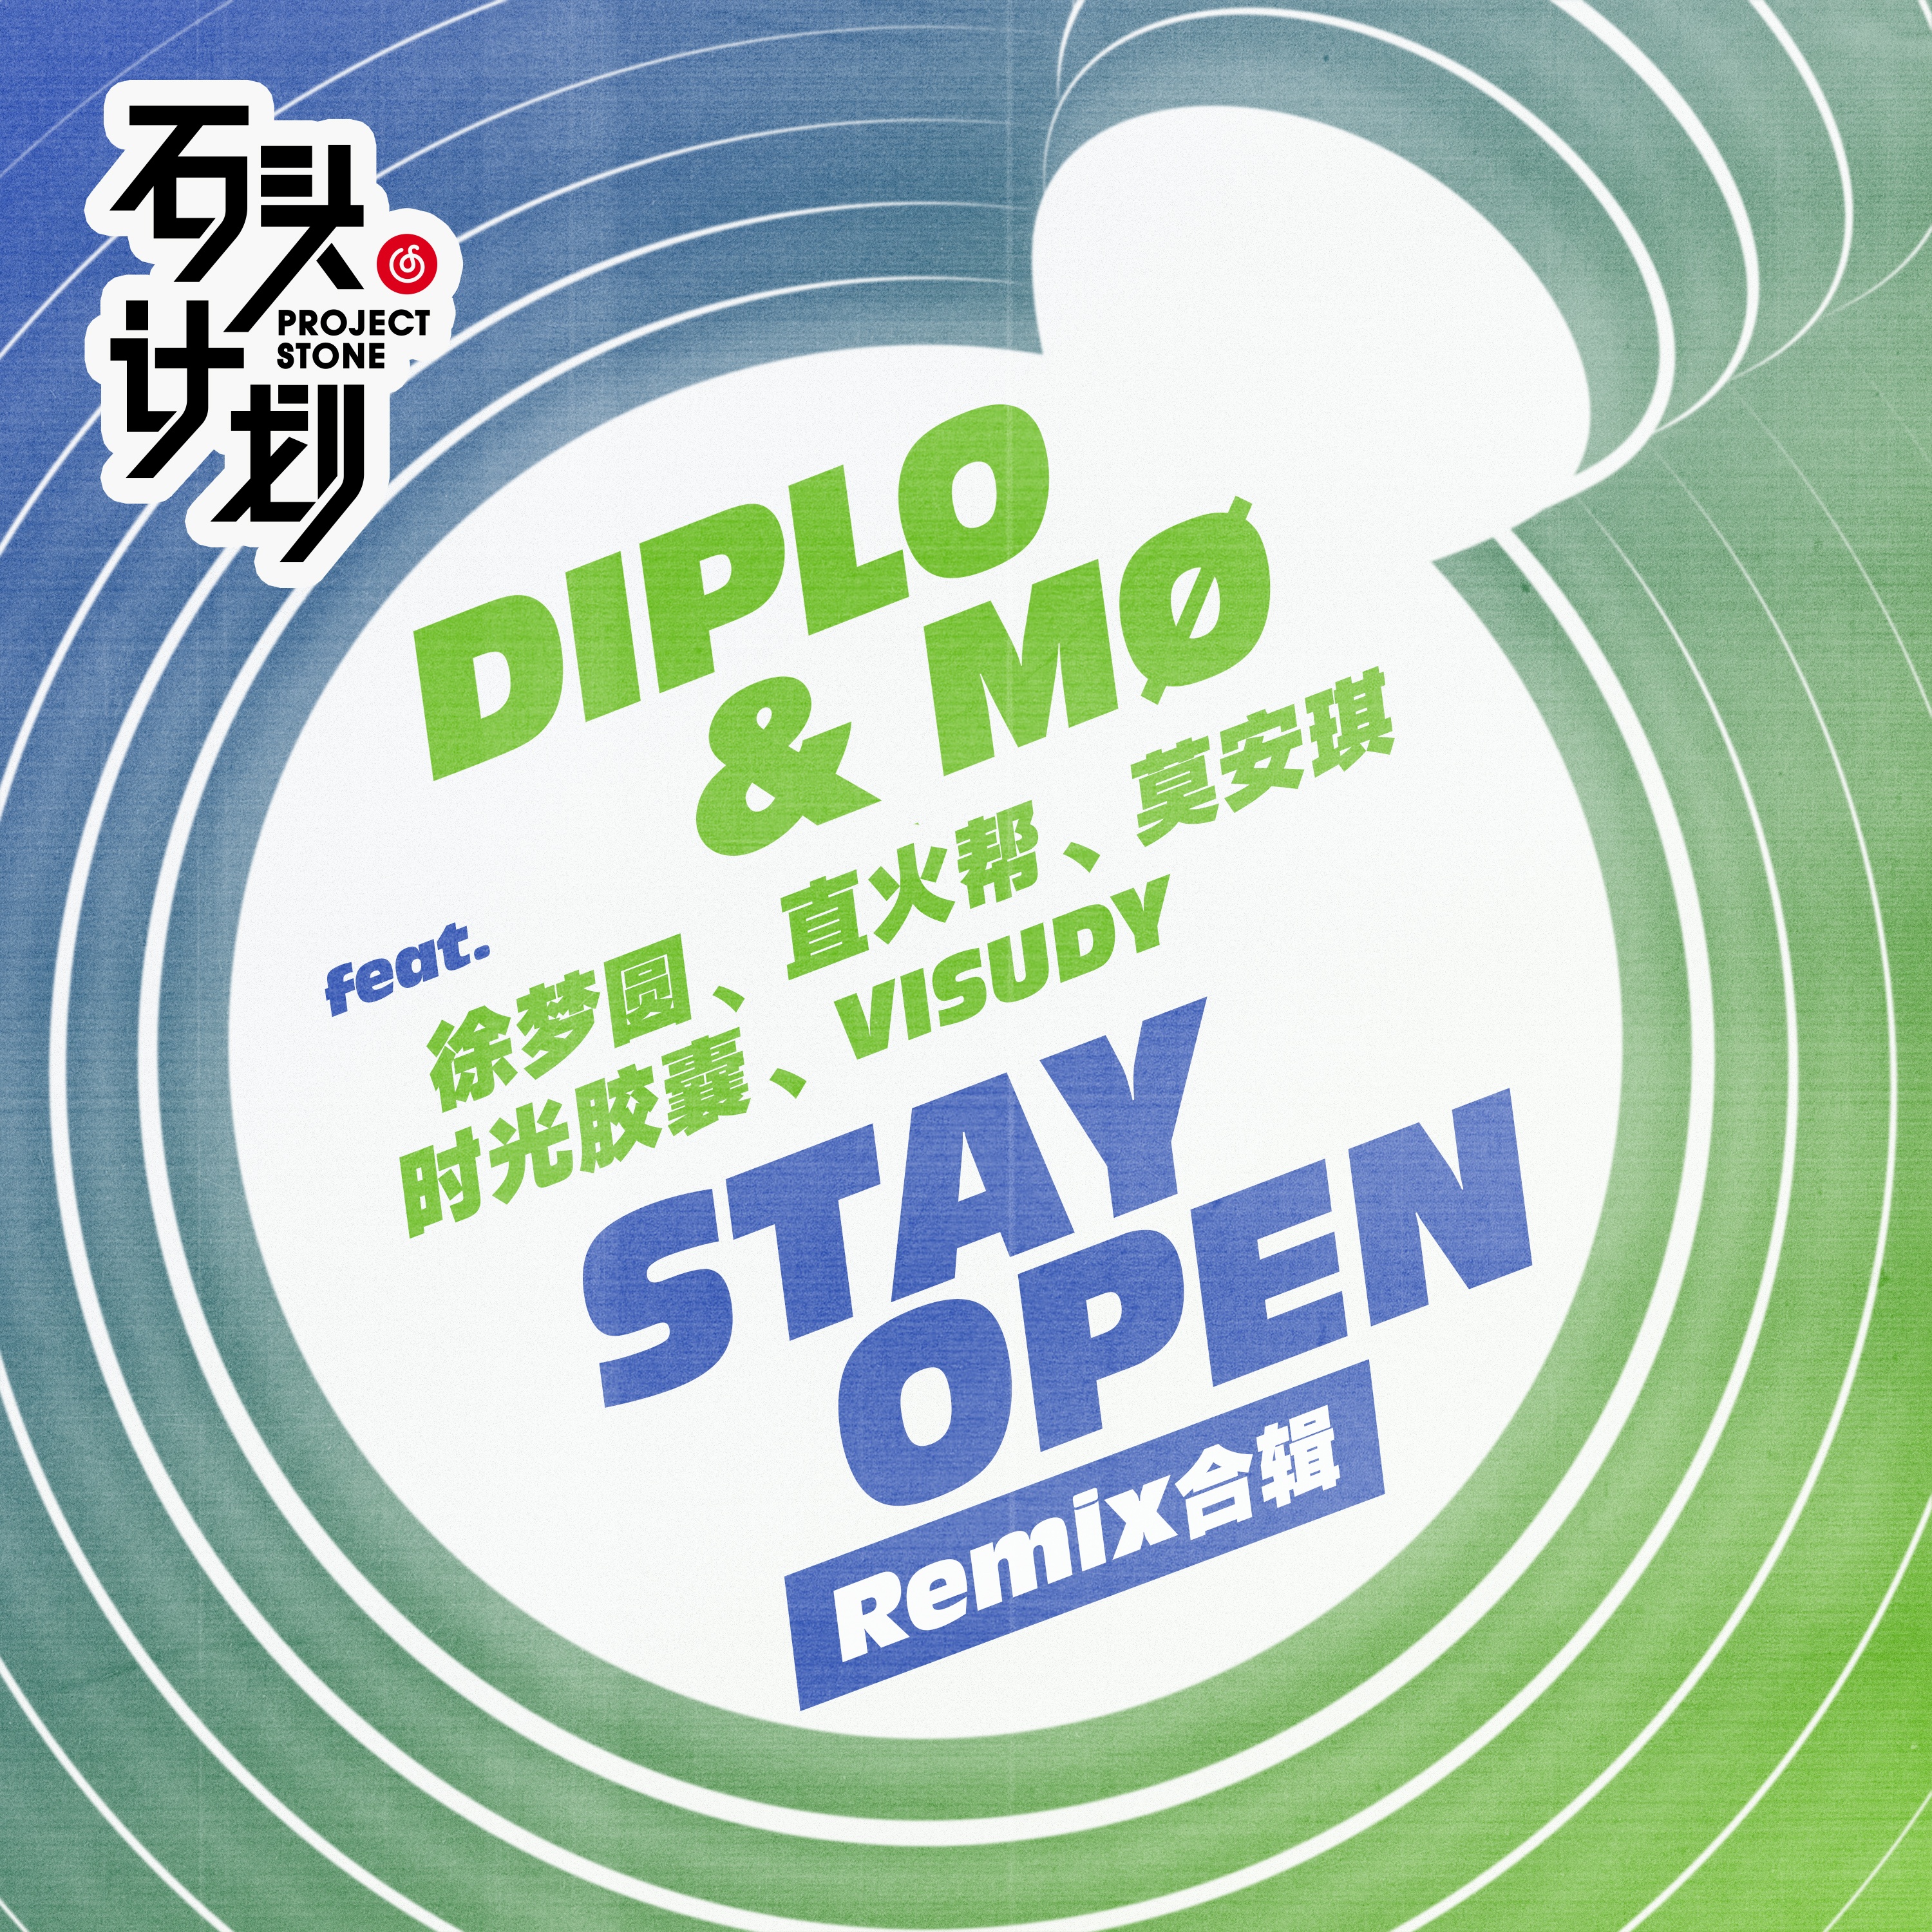 Diplo  M  Stay Open xu meng yuan Remix